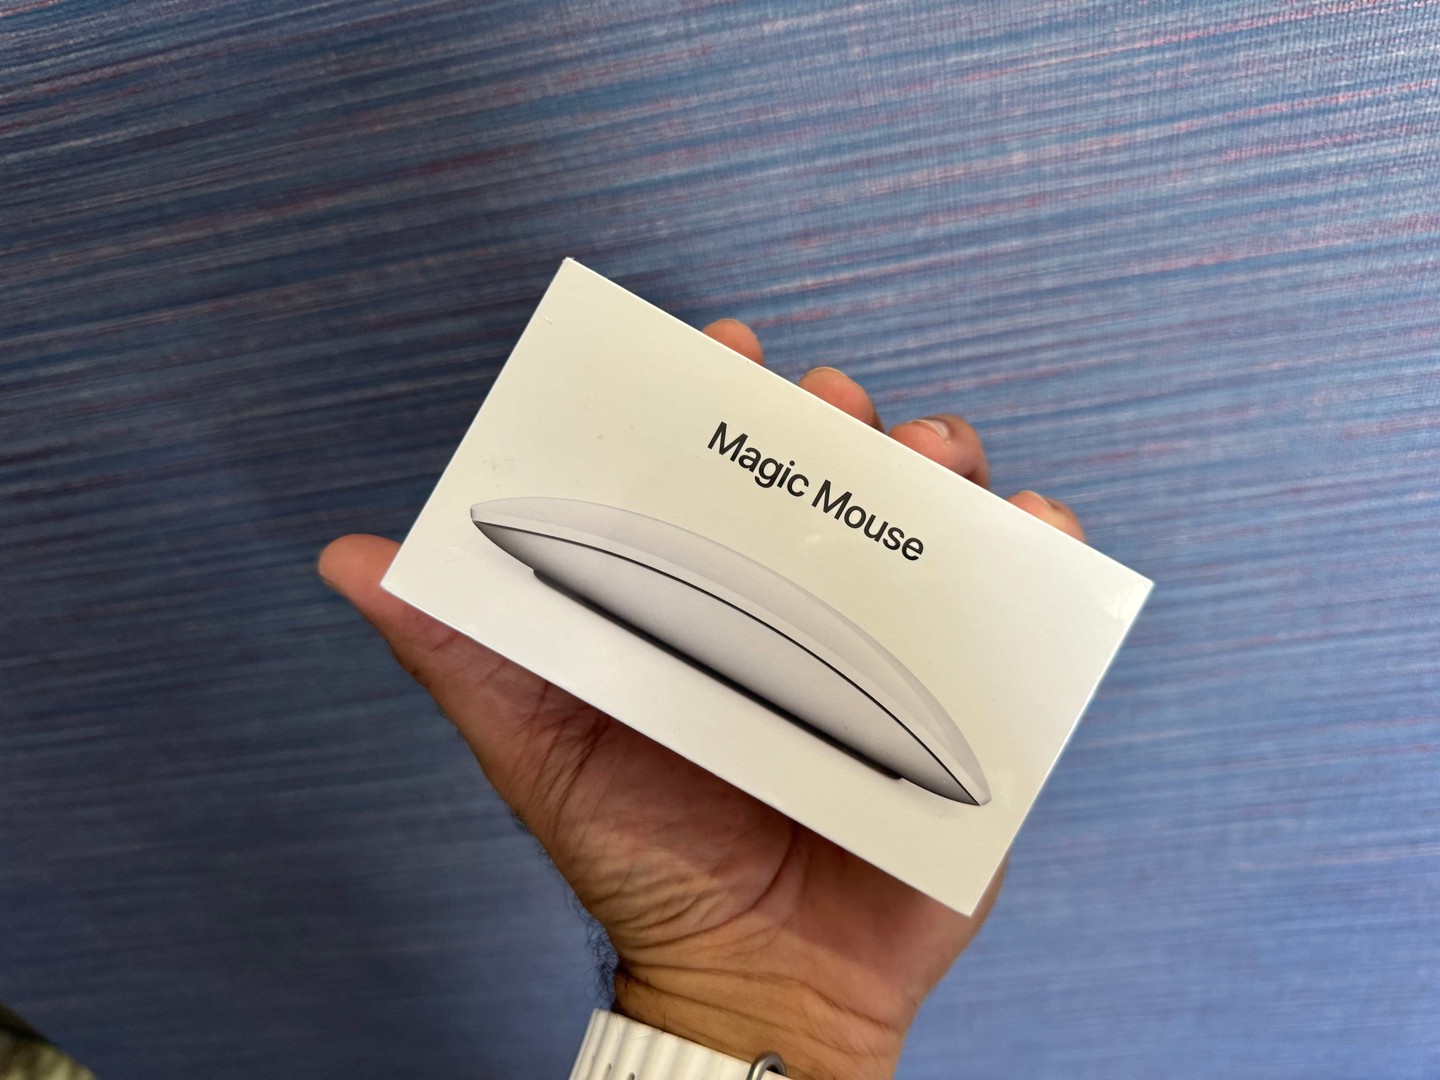 accesorios para electronica - Magic Mouse (2da Gen) Nuevos Sellados by Apple, Garantía, RD$ 6,800 NEG/TIENDA 0